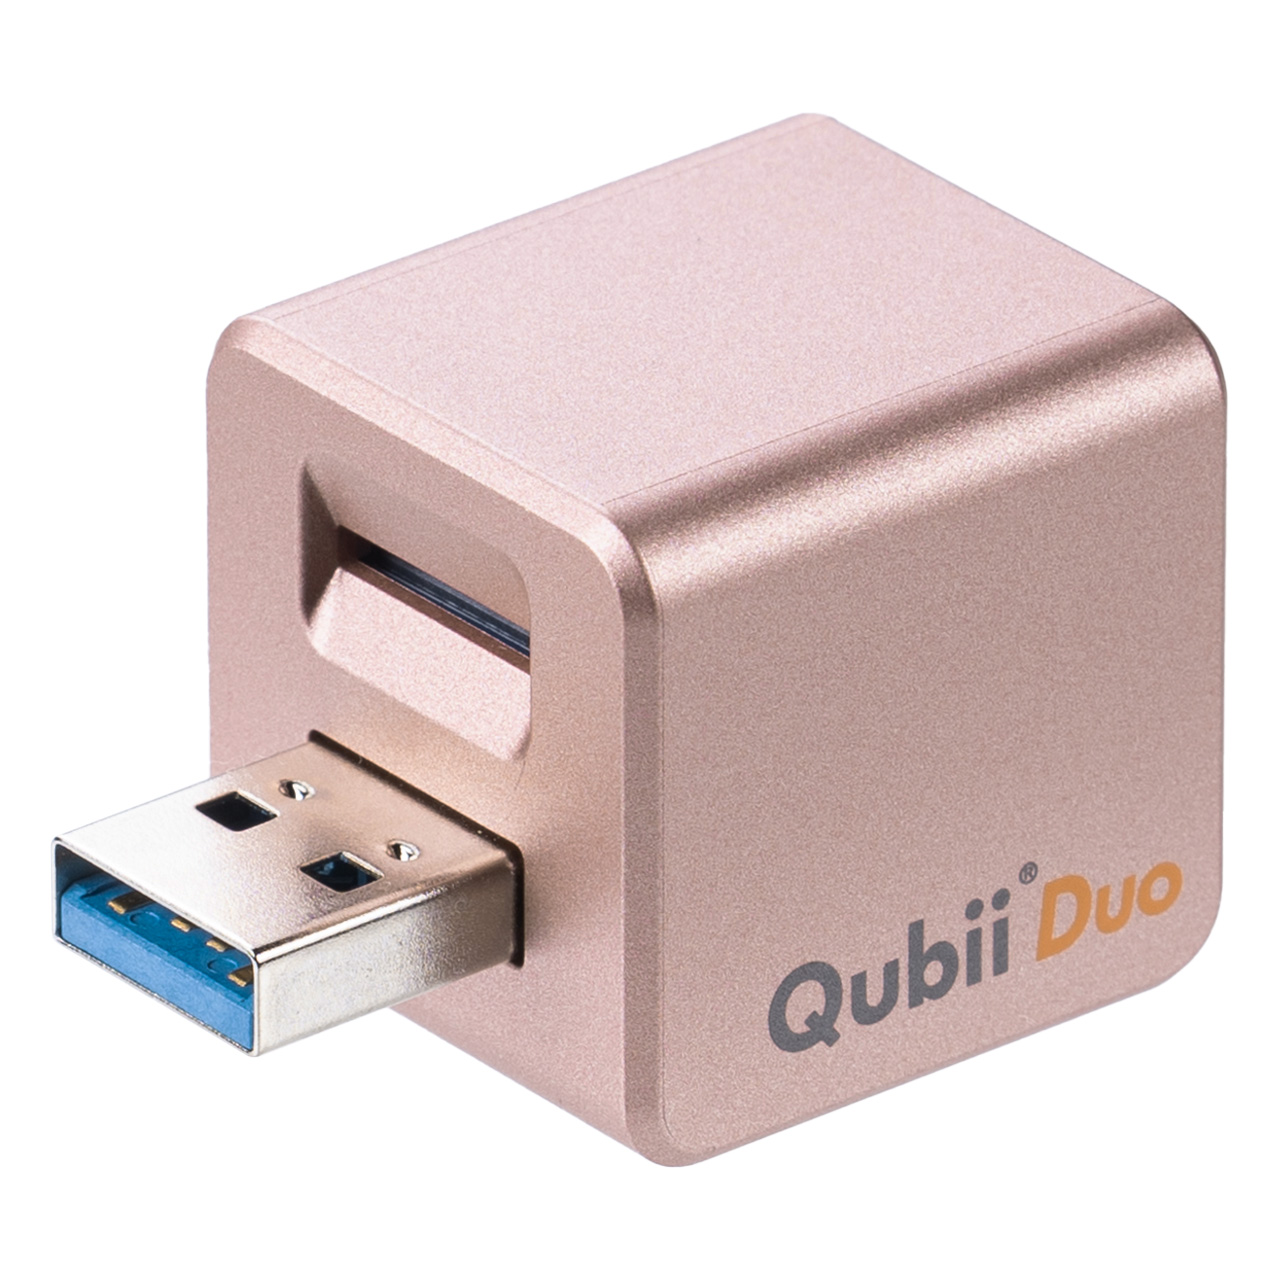 iPhone バックアップ 自動 Qubii Duo Android カードリーダー microSD iPad iOS スマホ 充電 簡単接続 USB3.2 Gen1 動画 写真 データ保存 400-ADRIP013